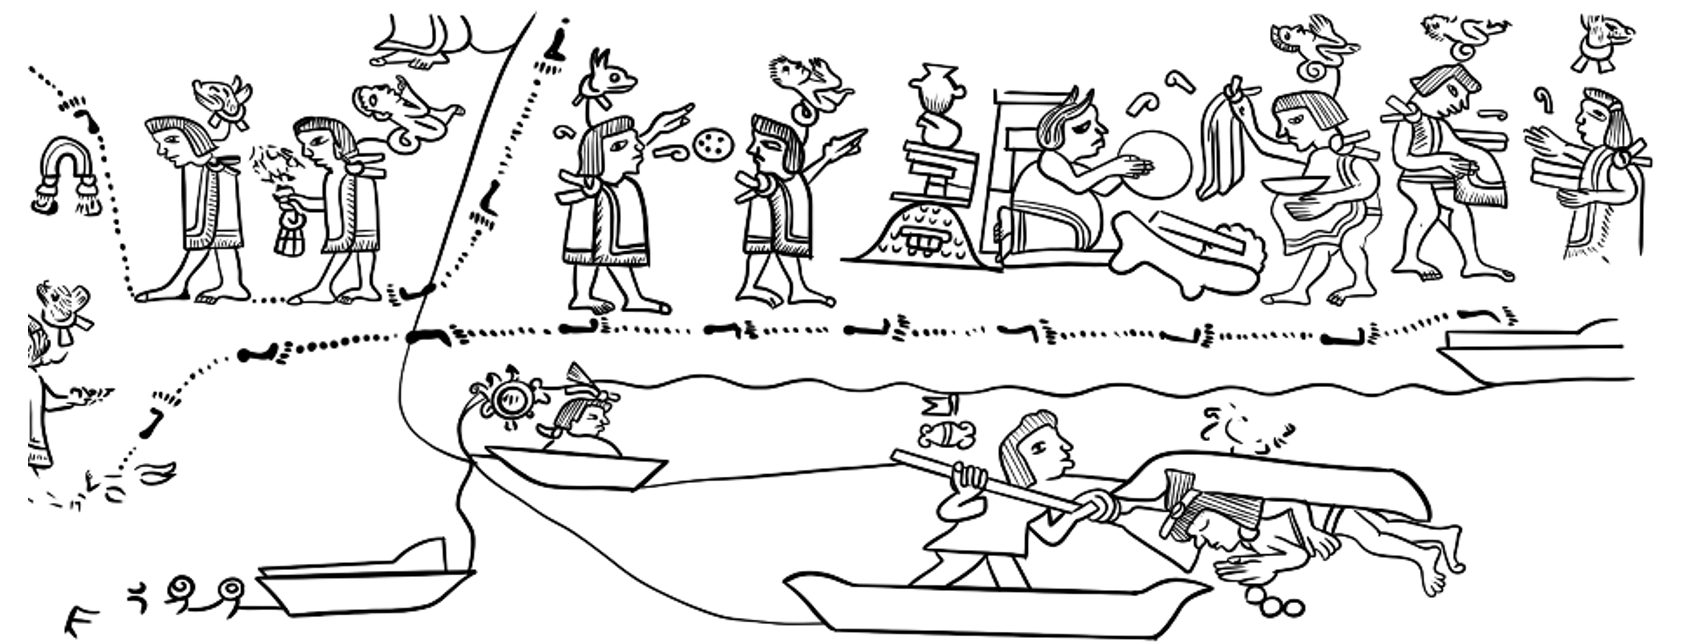 Detalle de la lámina 8 del códice Xolotl donde se observa en la esquina inferior derecha una confrontación en agua. Dibujo de Aban Flores Morán basado en facsímil (1996). 